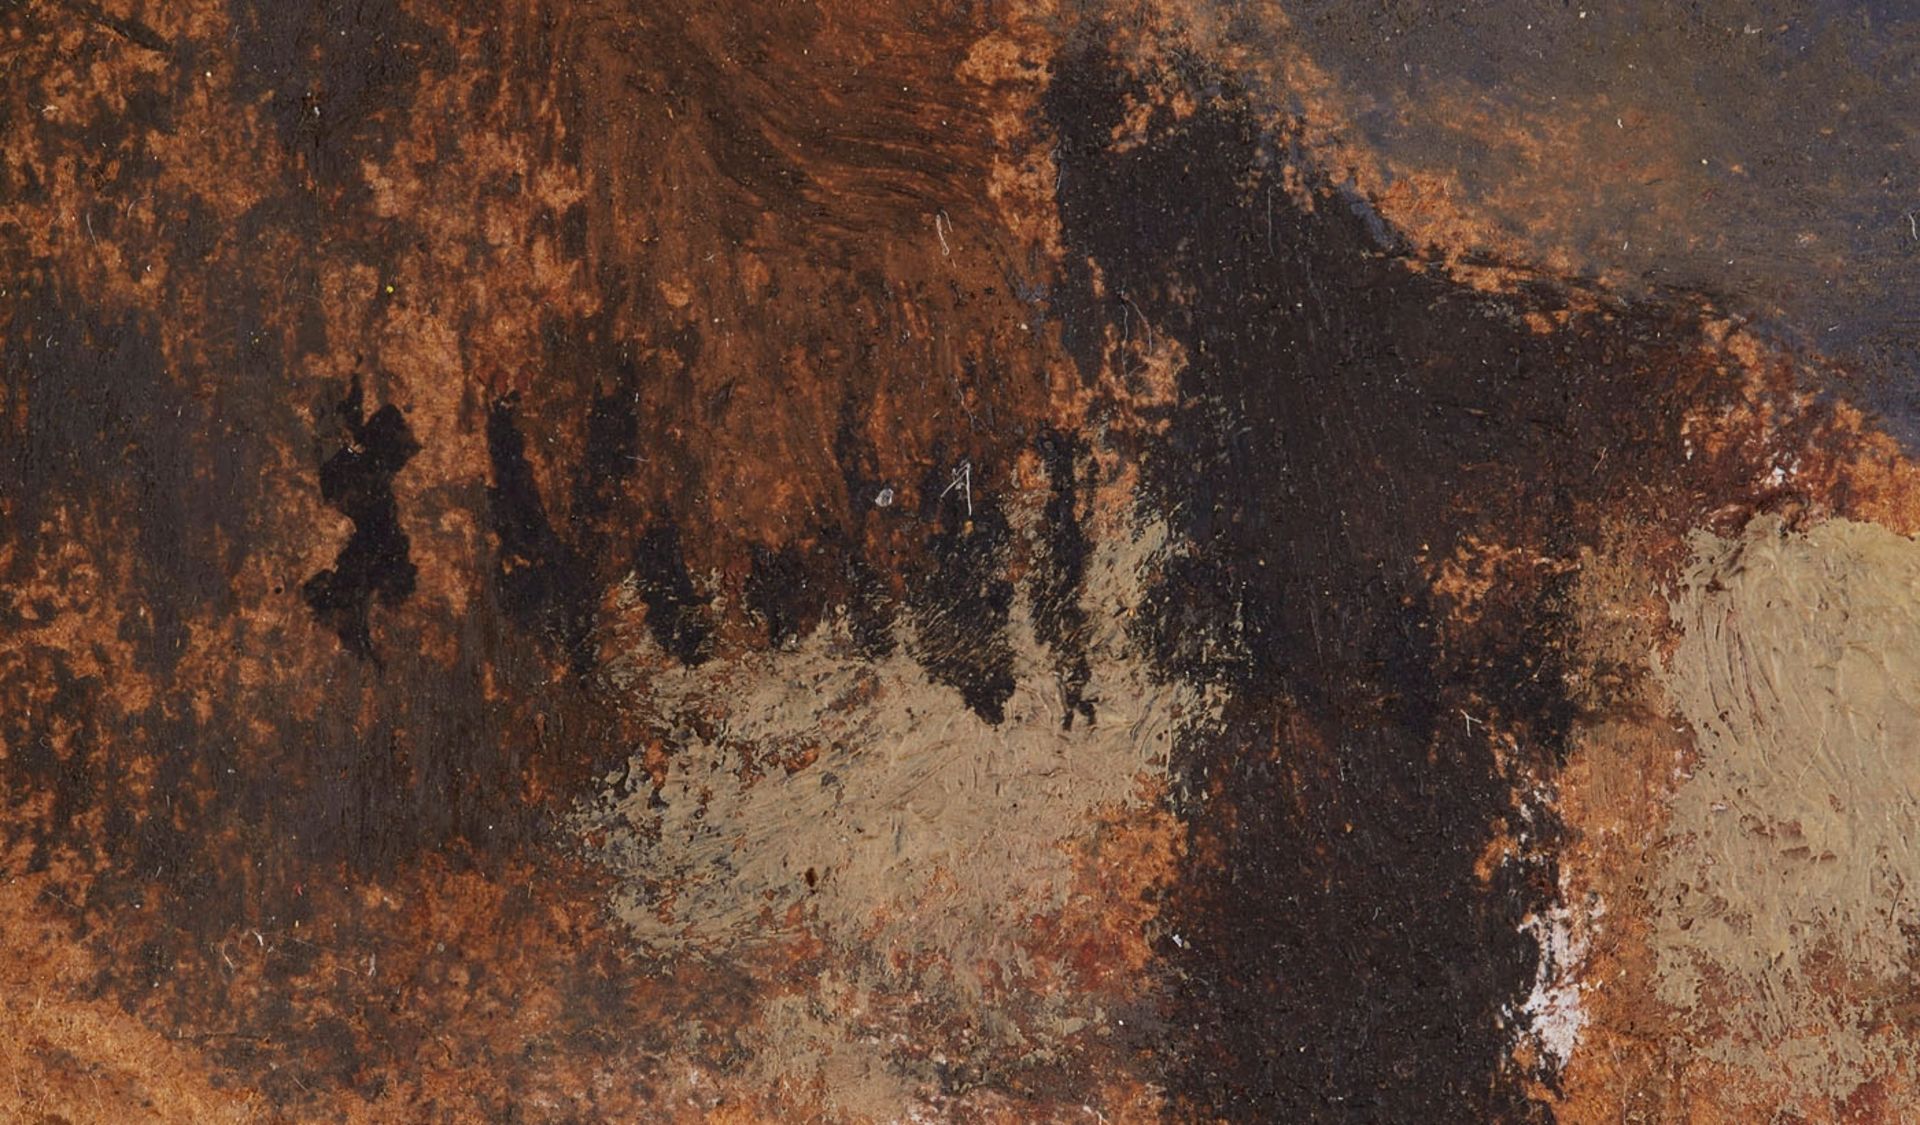 Vuillard, Edouard - Image 50 of 51